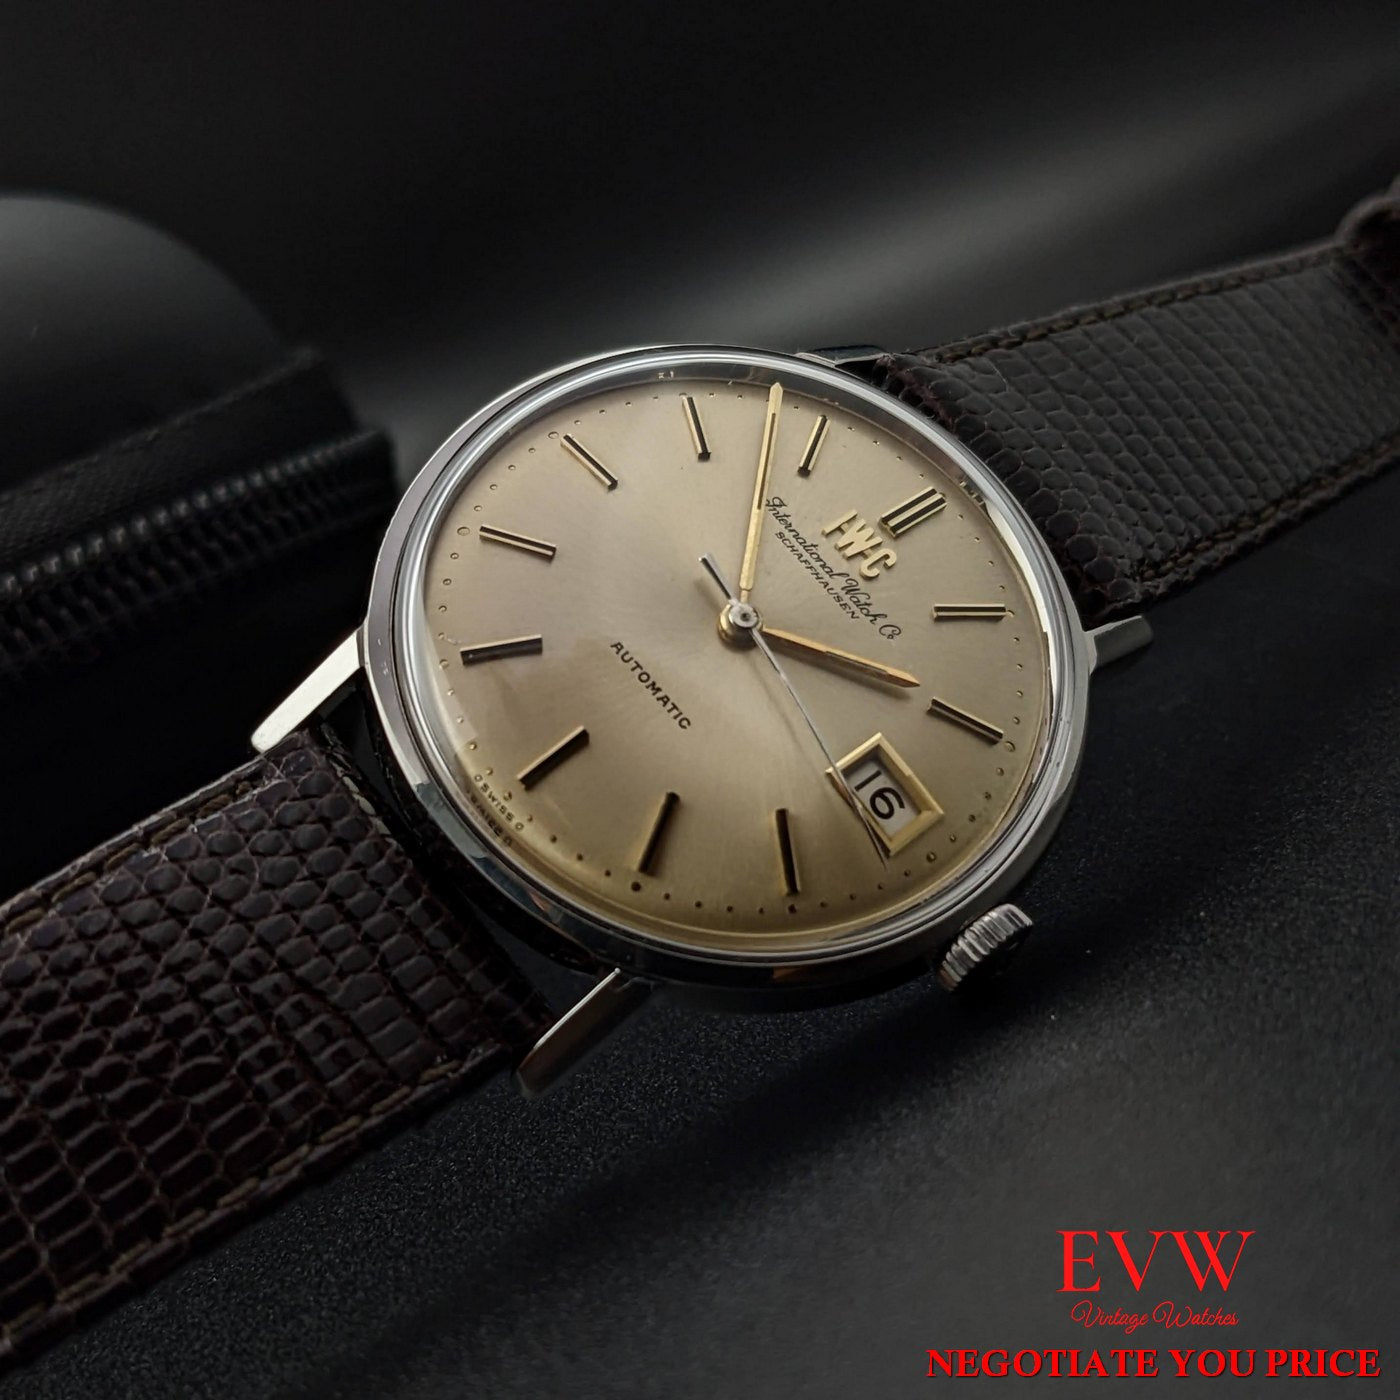 Wristwatch IWC Schaffhausen Vintage - cailber 8541